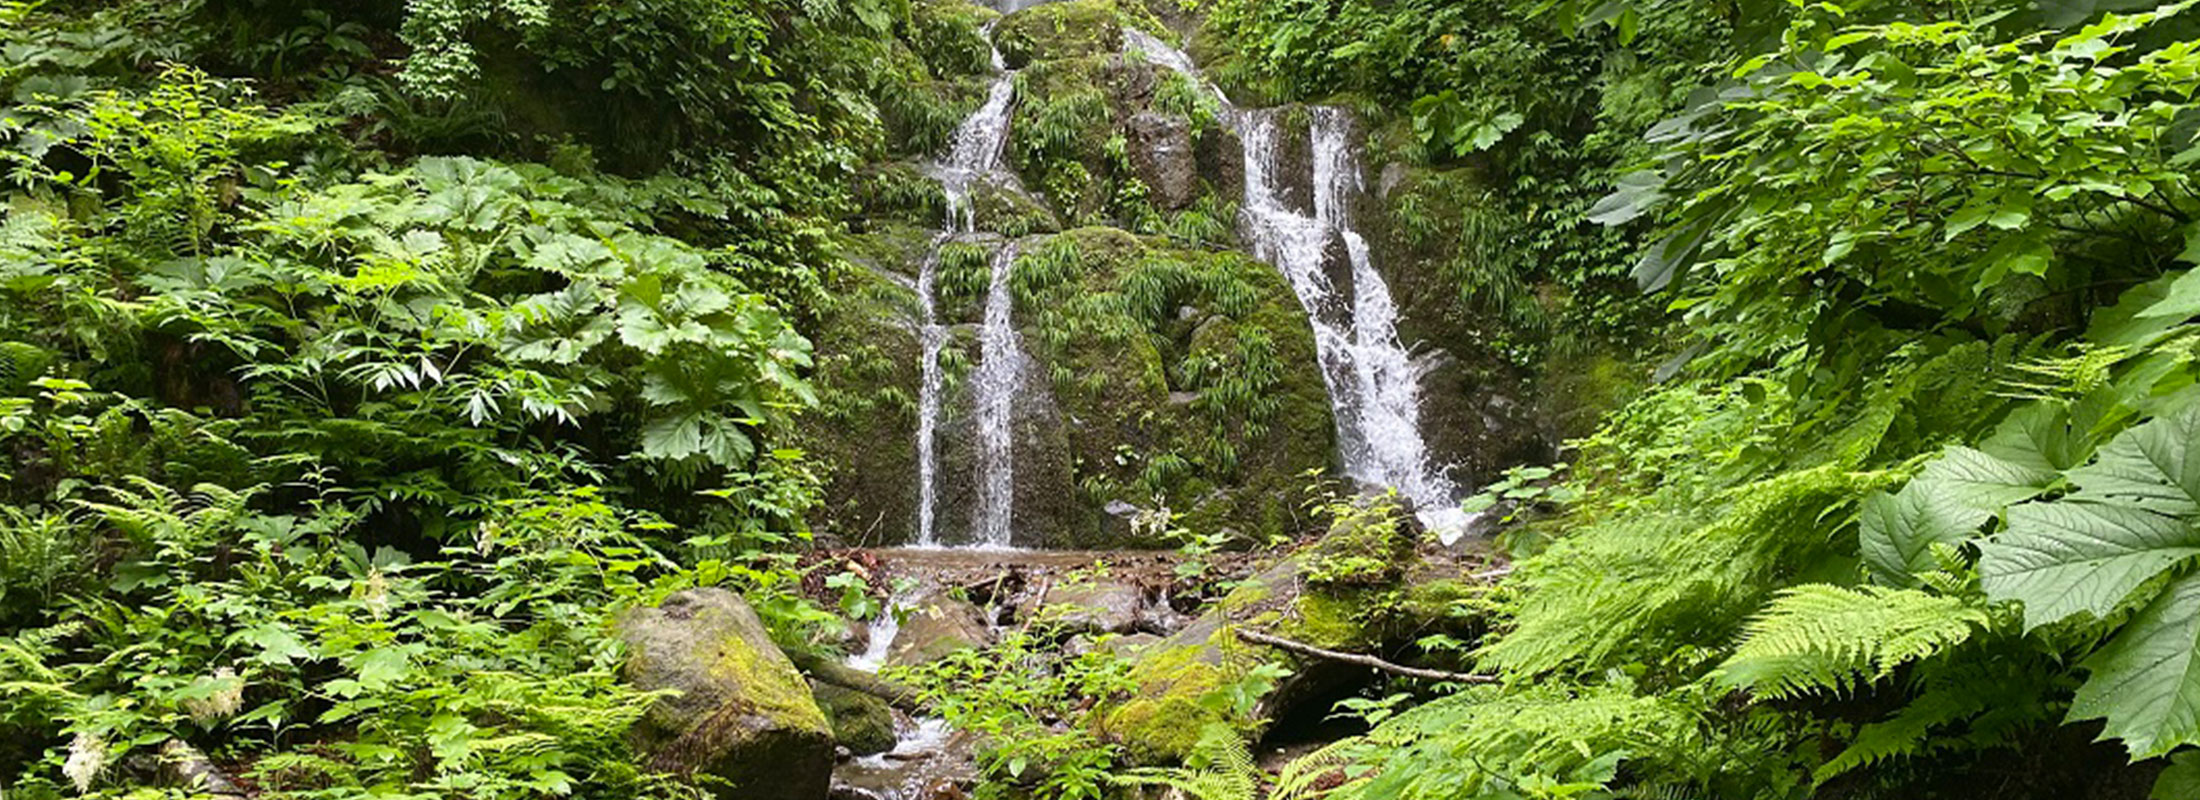 三蔵院修験の滝